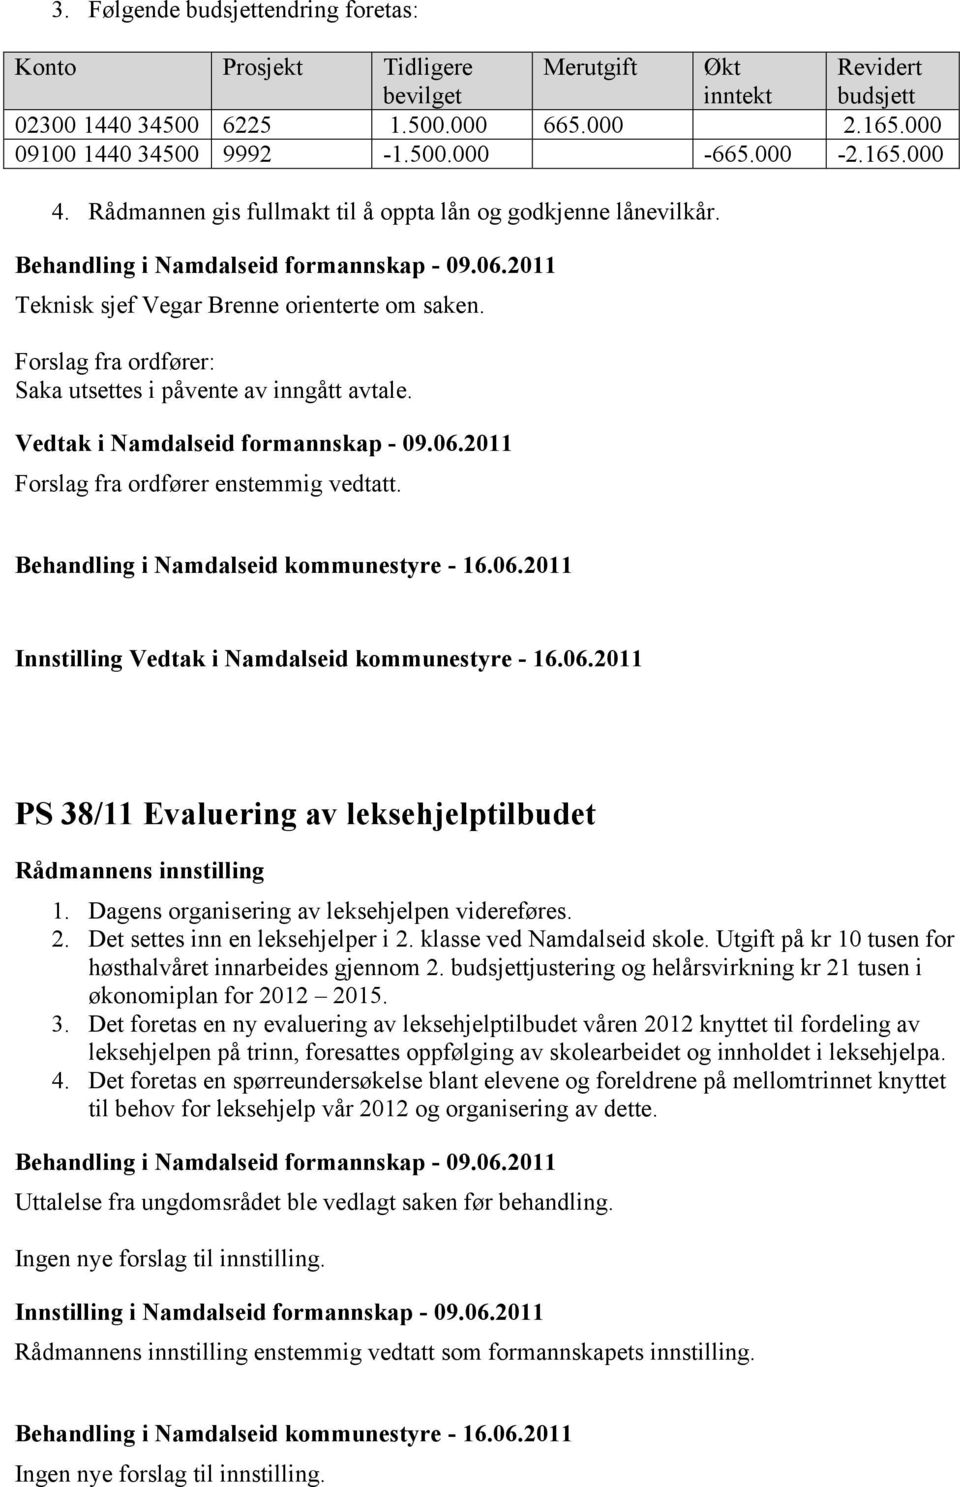 Vedtak i Namdalseid formannskap - 09.06.2011 Forslag fra ordfører enstemmig vedtatt. Innstilling PS 38/11 Evaluering av leksehjelptilbudet 1. Dagens organisering av leksehjelpen videreføres. 2.